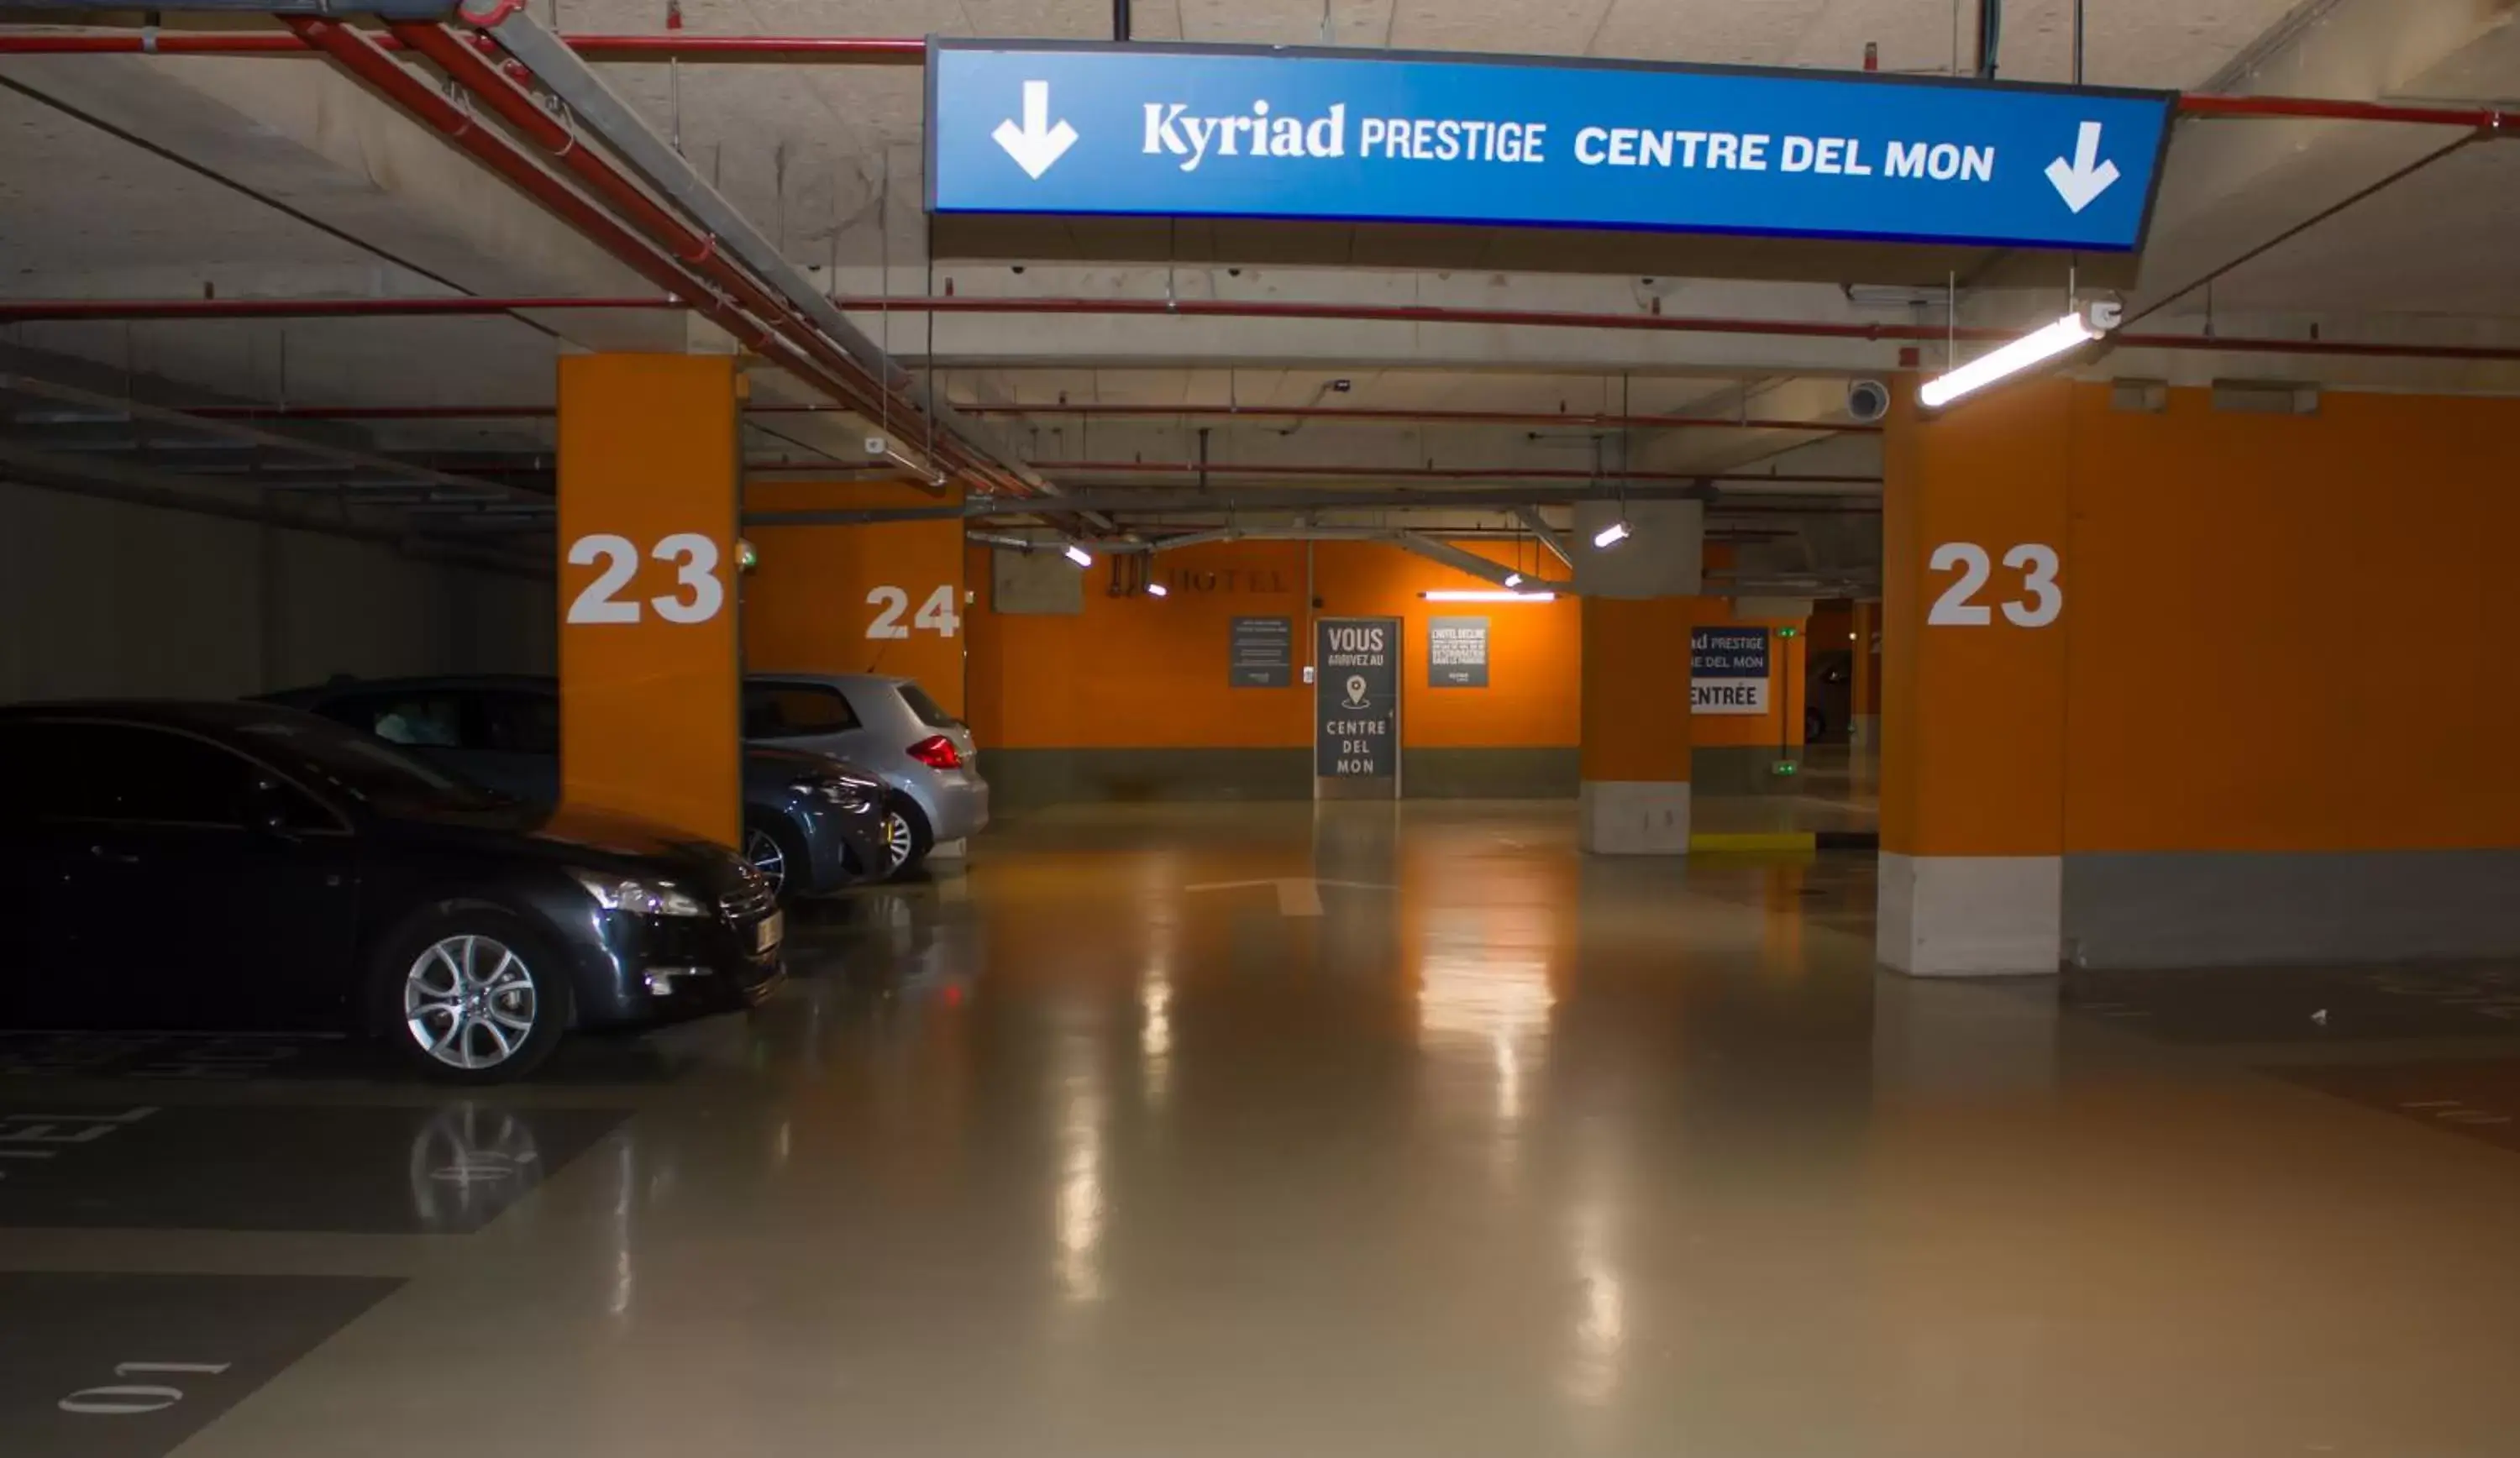 Parking in Kyriad Prestige Perpignan Centre del Mon